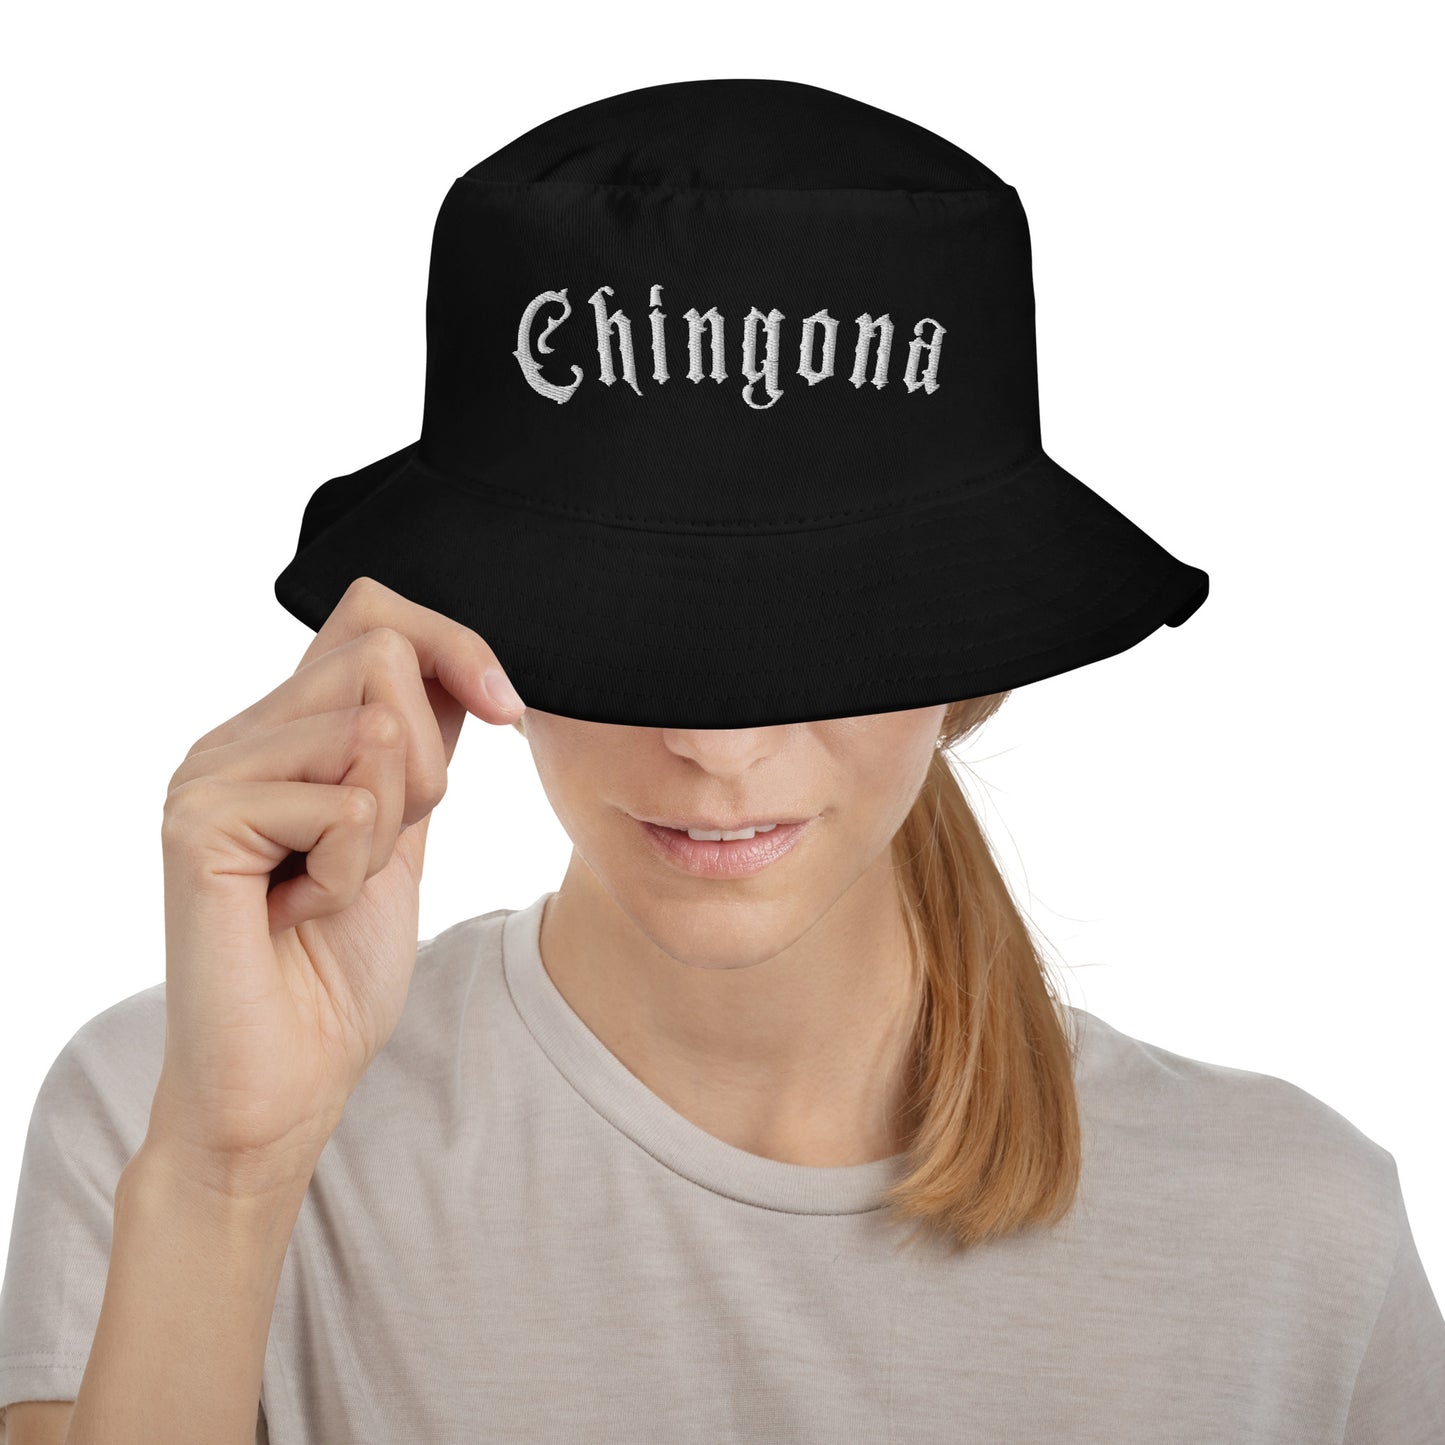 "Chingona" Bucket Hat